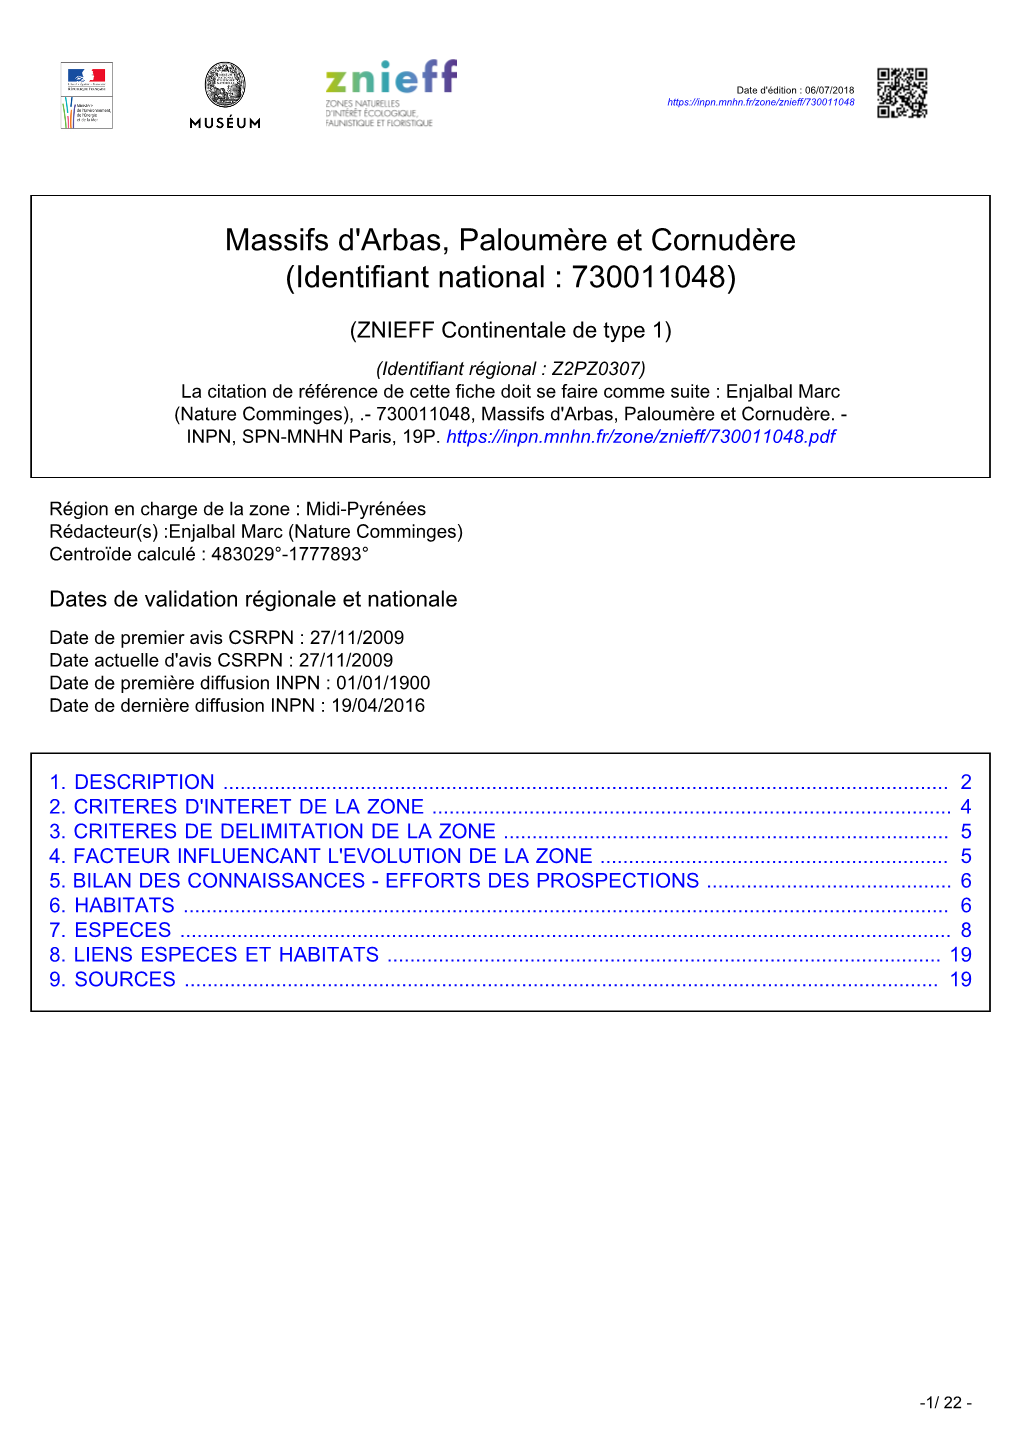 Massifs D'arbas, Paloumère Et Cornudère (Identifiant National : 730011048)